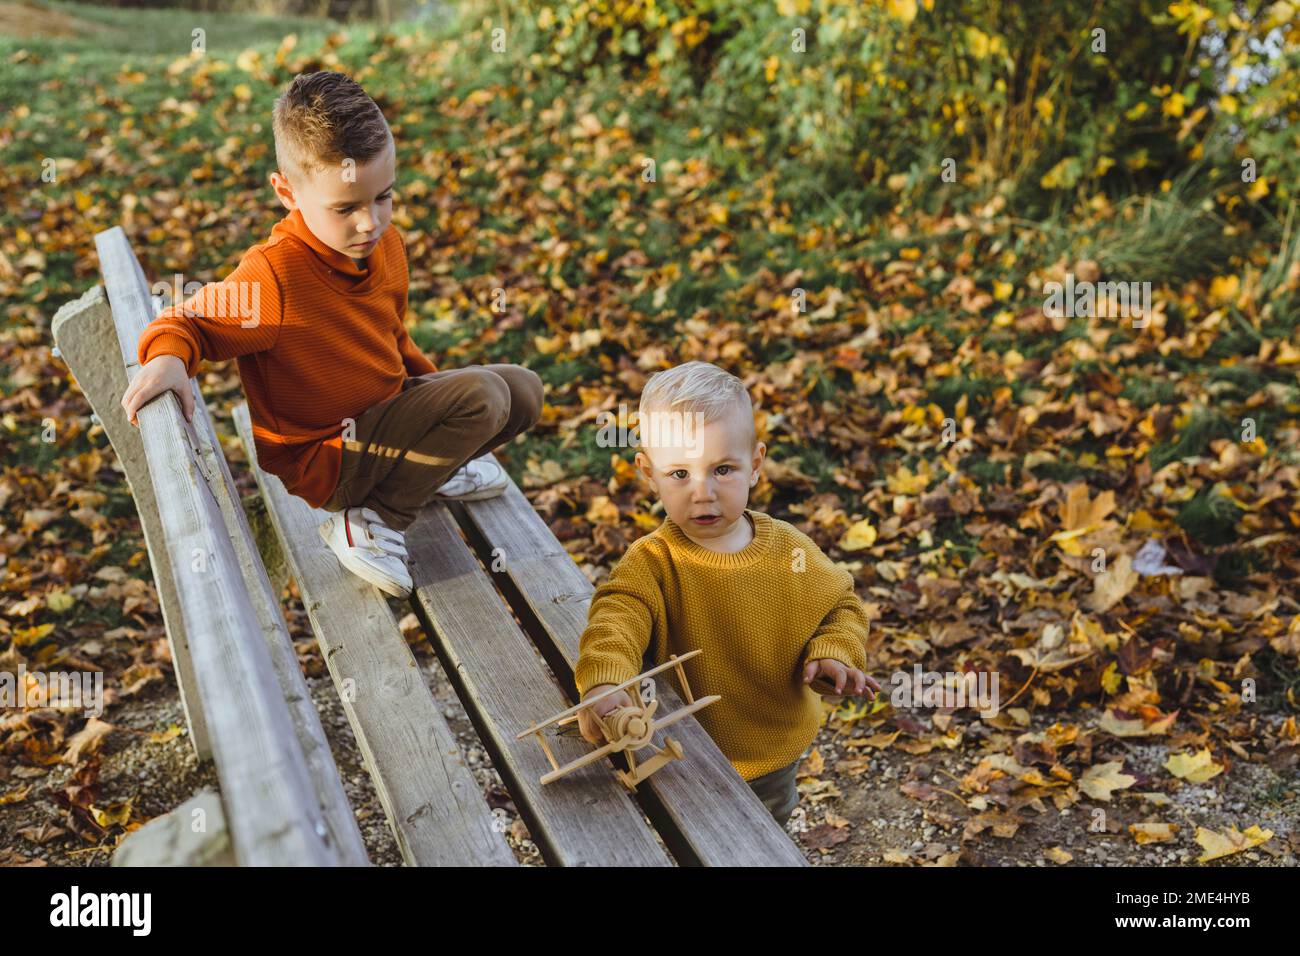 Der Junge sieht den Bruder an, der im Herbst mit einem Spielzeugflugzeug auf einer Bank spielt Stockfoto